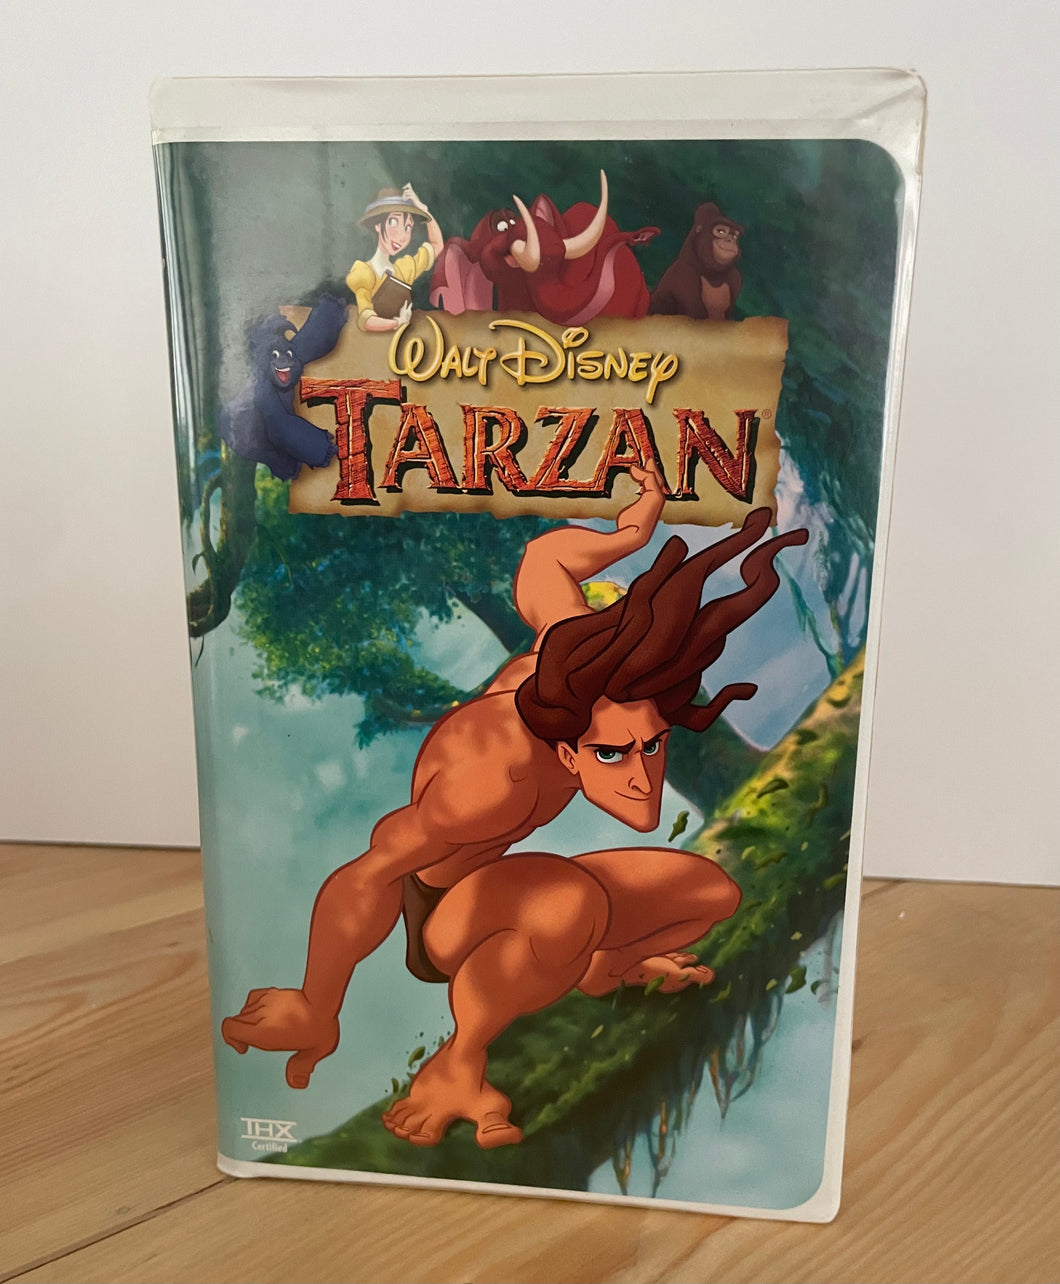 Vintage Walt Disney 1996 “Tarzan” #15799 VHS